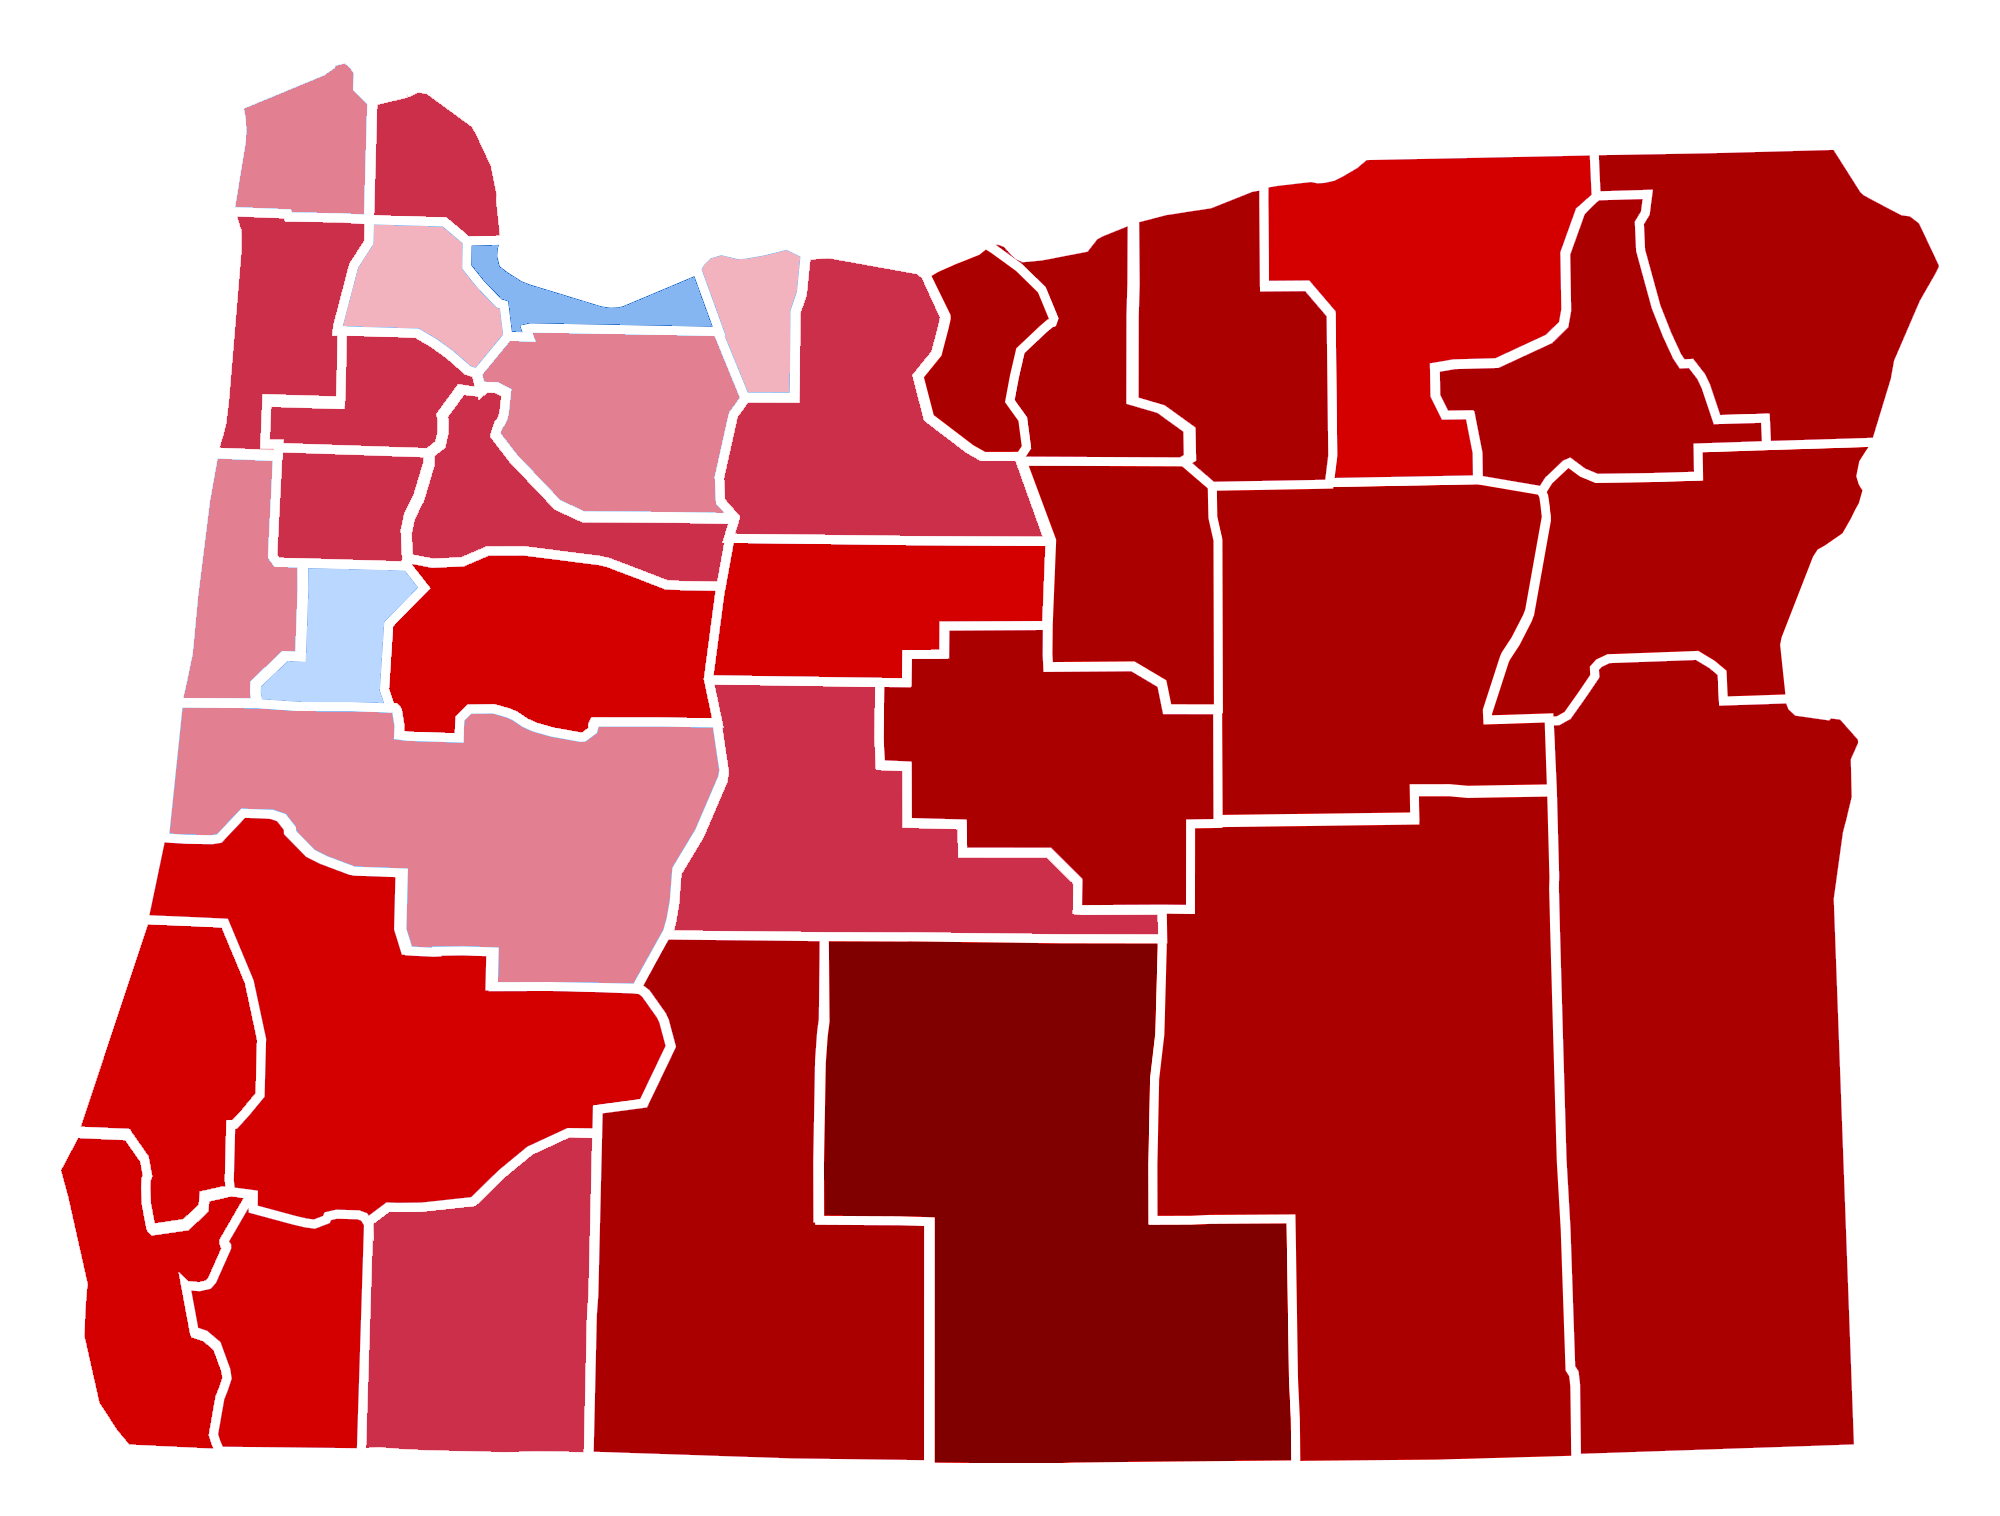 Oregon_Presidential_Election_Results_2016_Republican_Landslide_15.06%.png